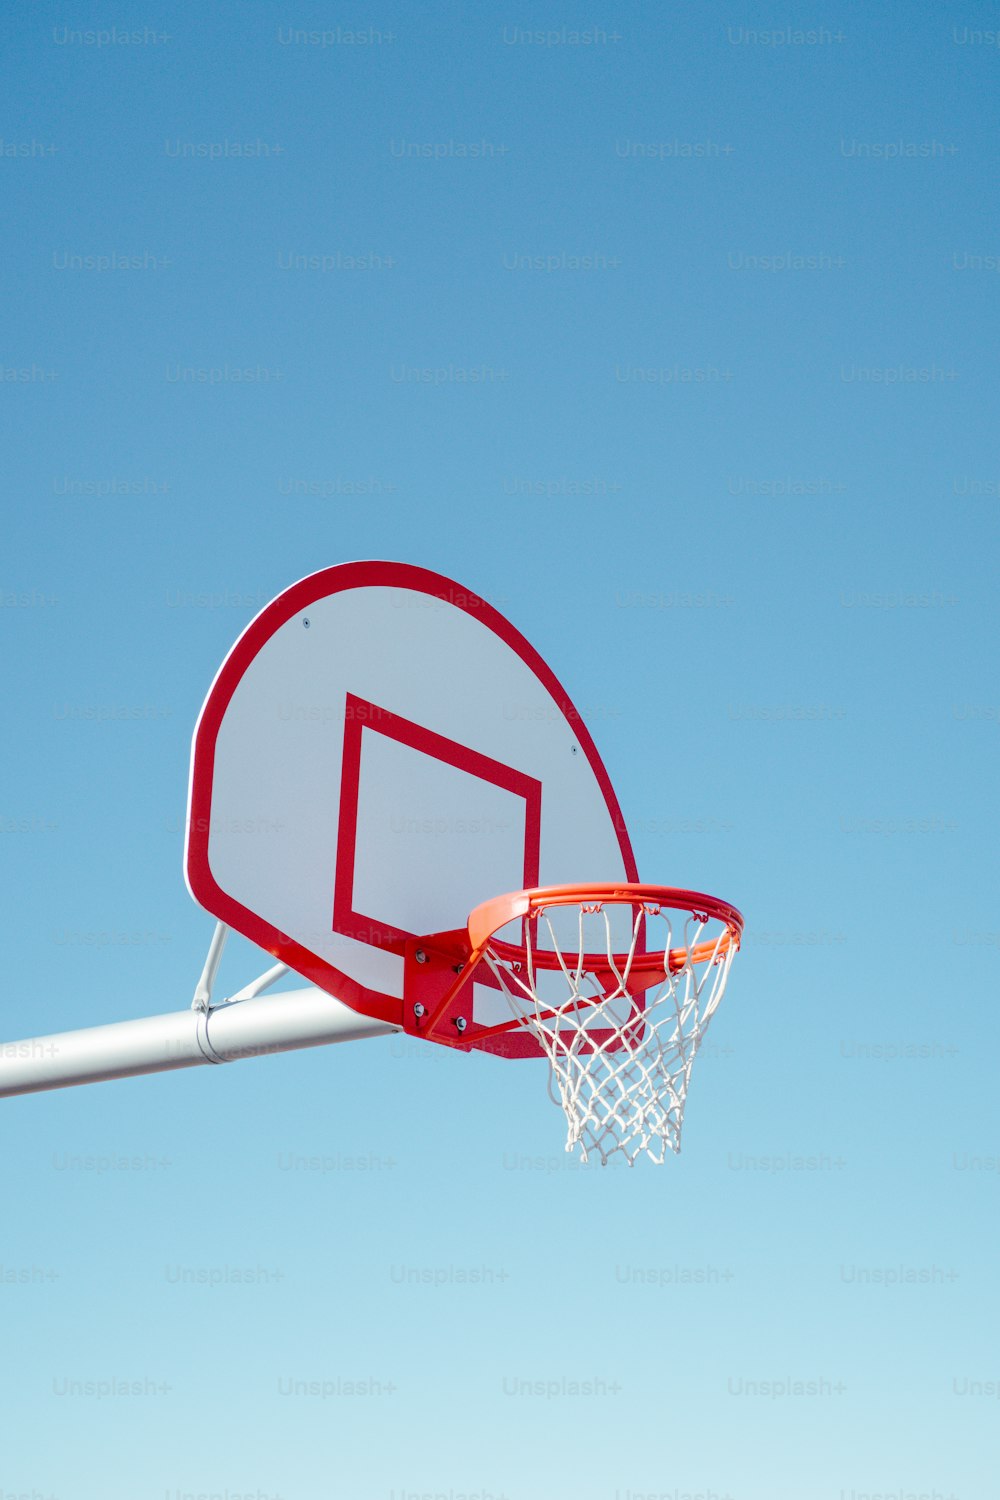 Un aro de baloncesto con un cielo azul claro en el fondo